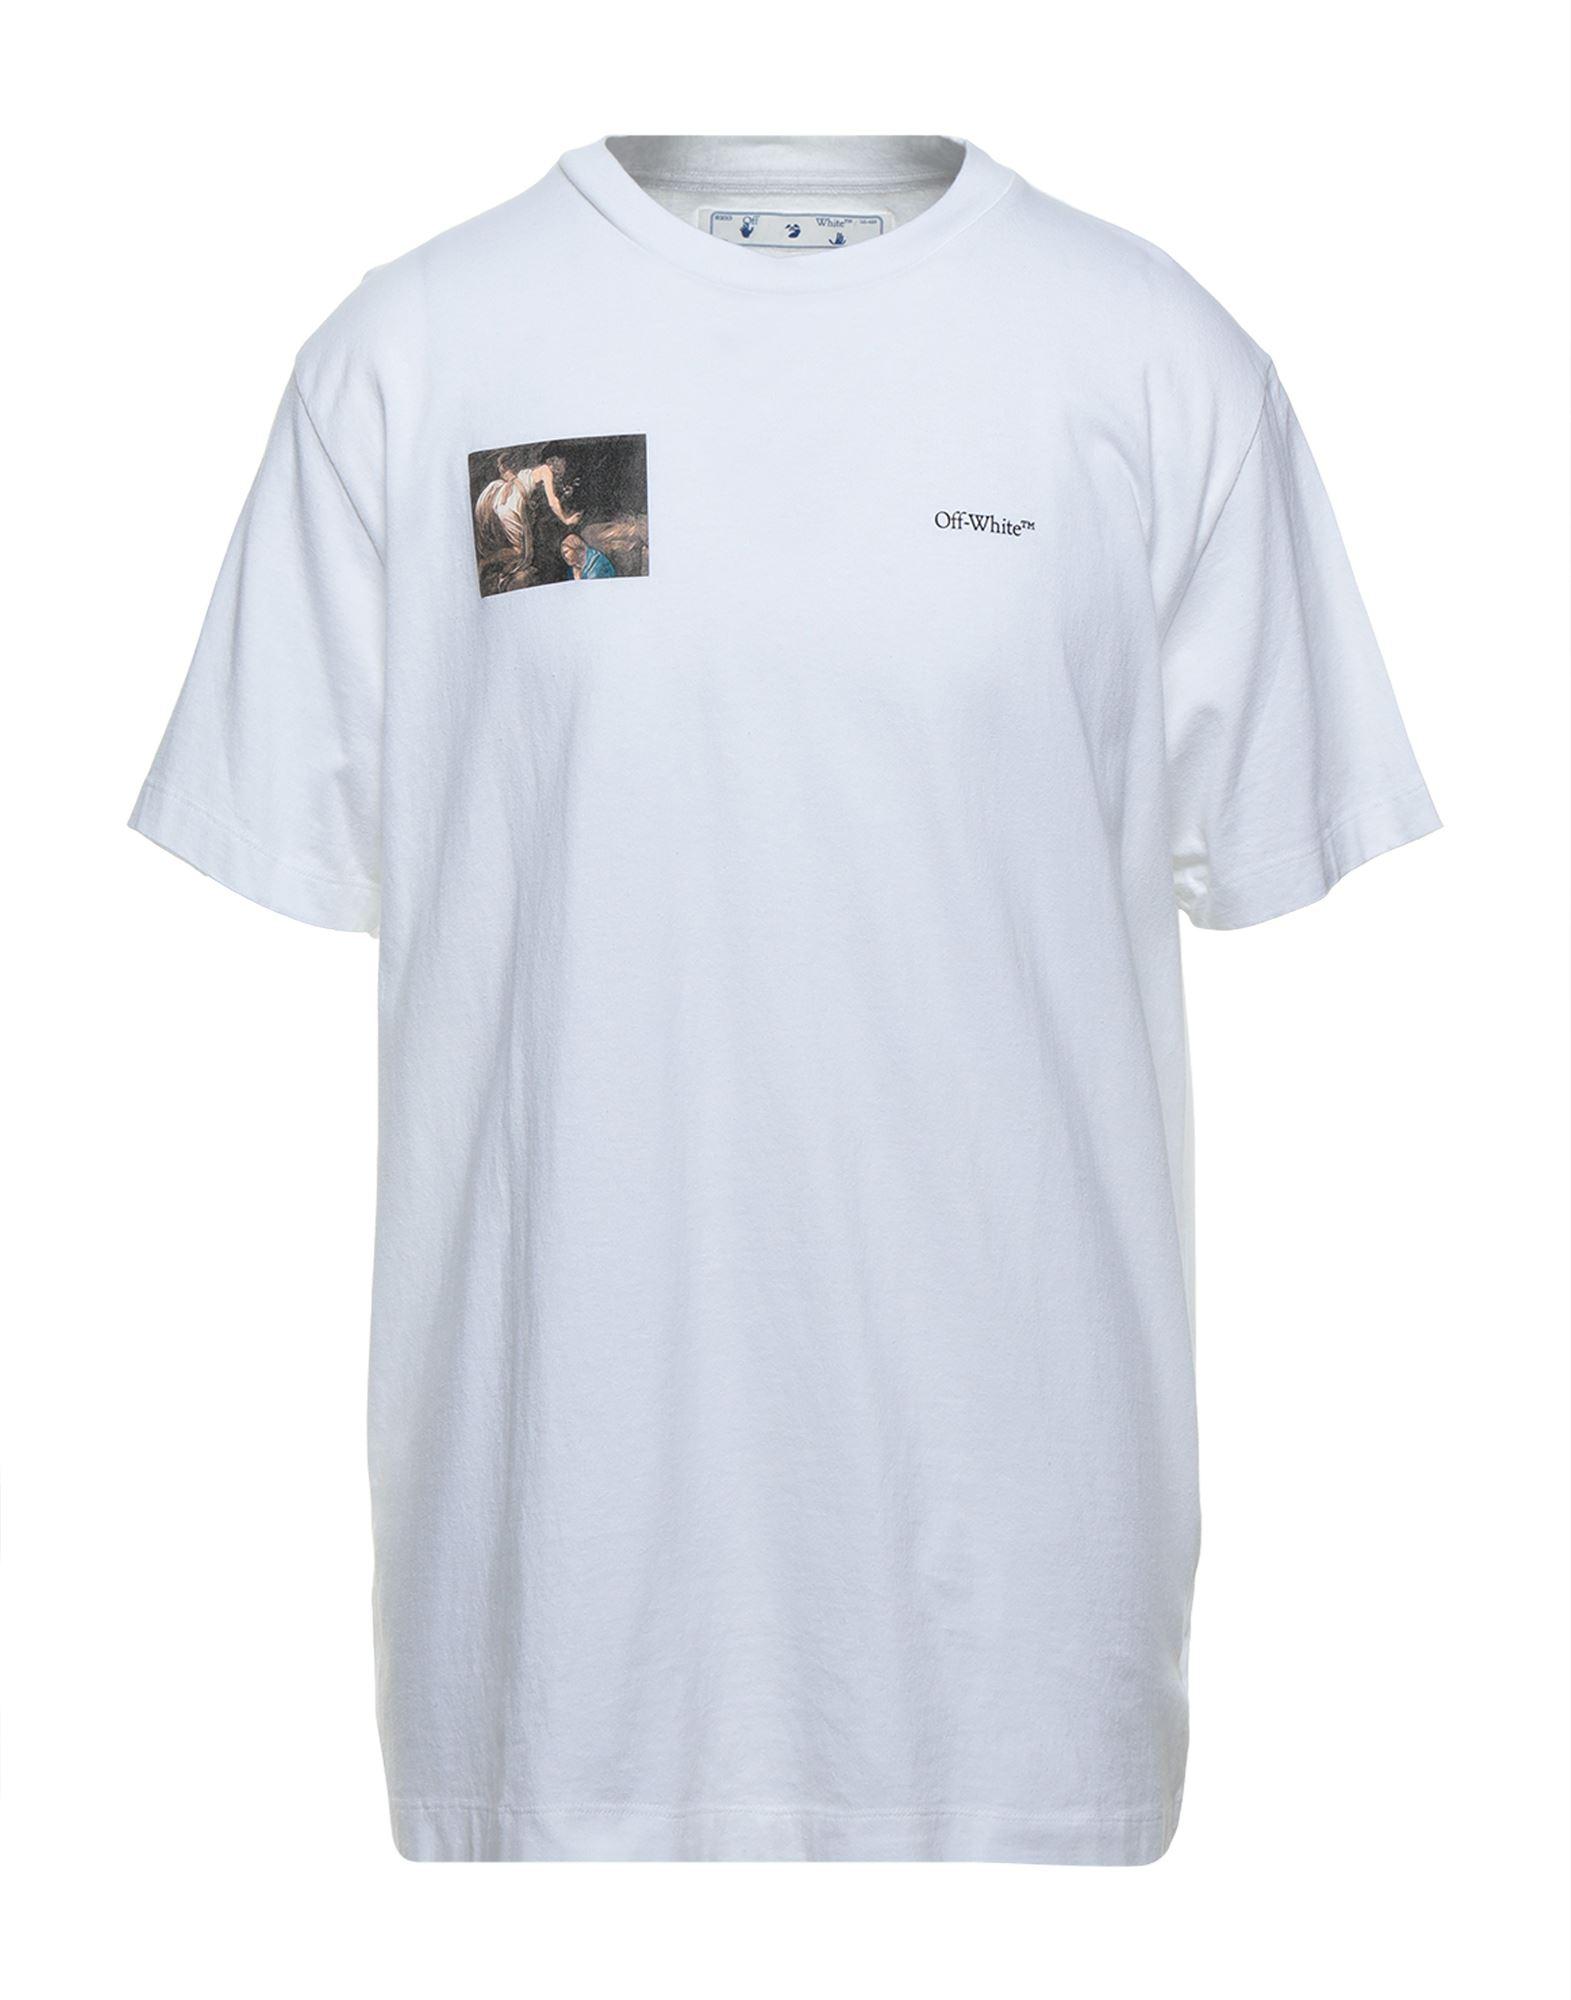 Off-White c/o Virgil Abloh T-shirt in White for Men - Lyst